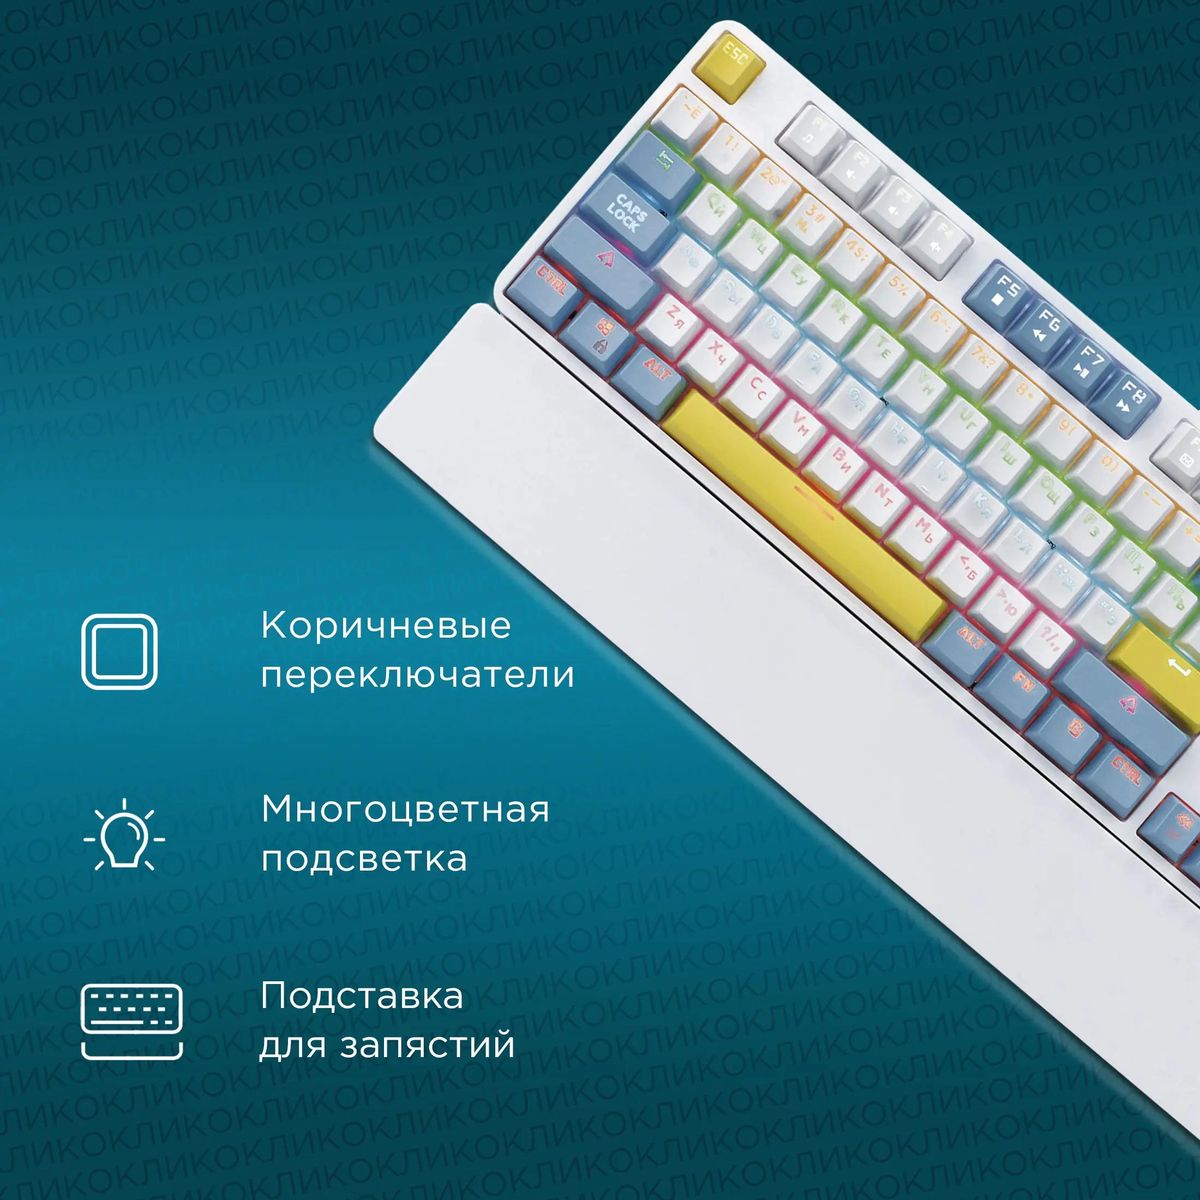 Клавиатура Oklick K951X, белый